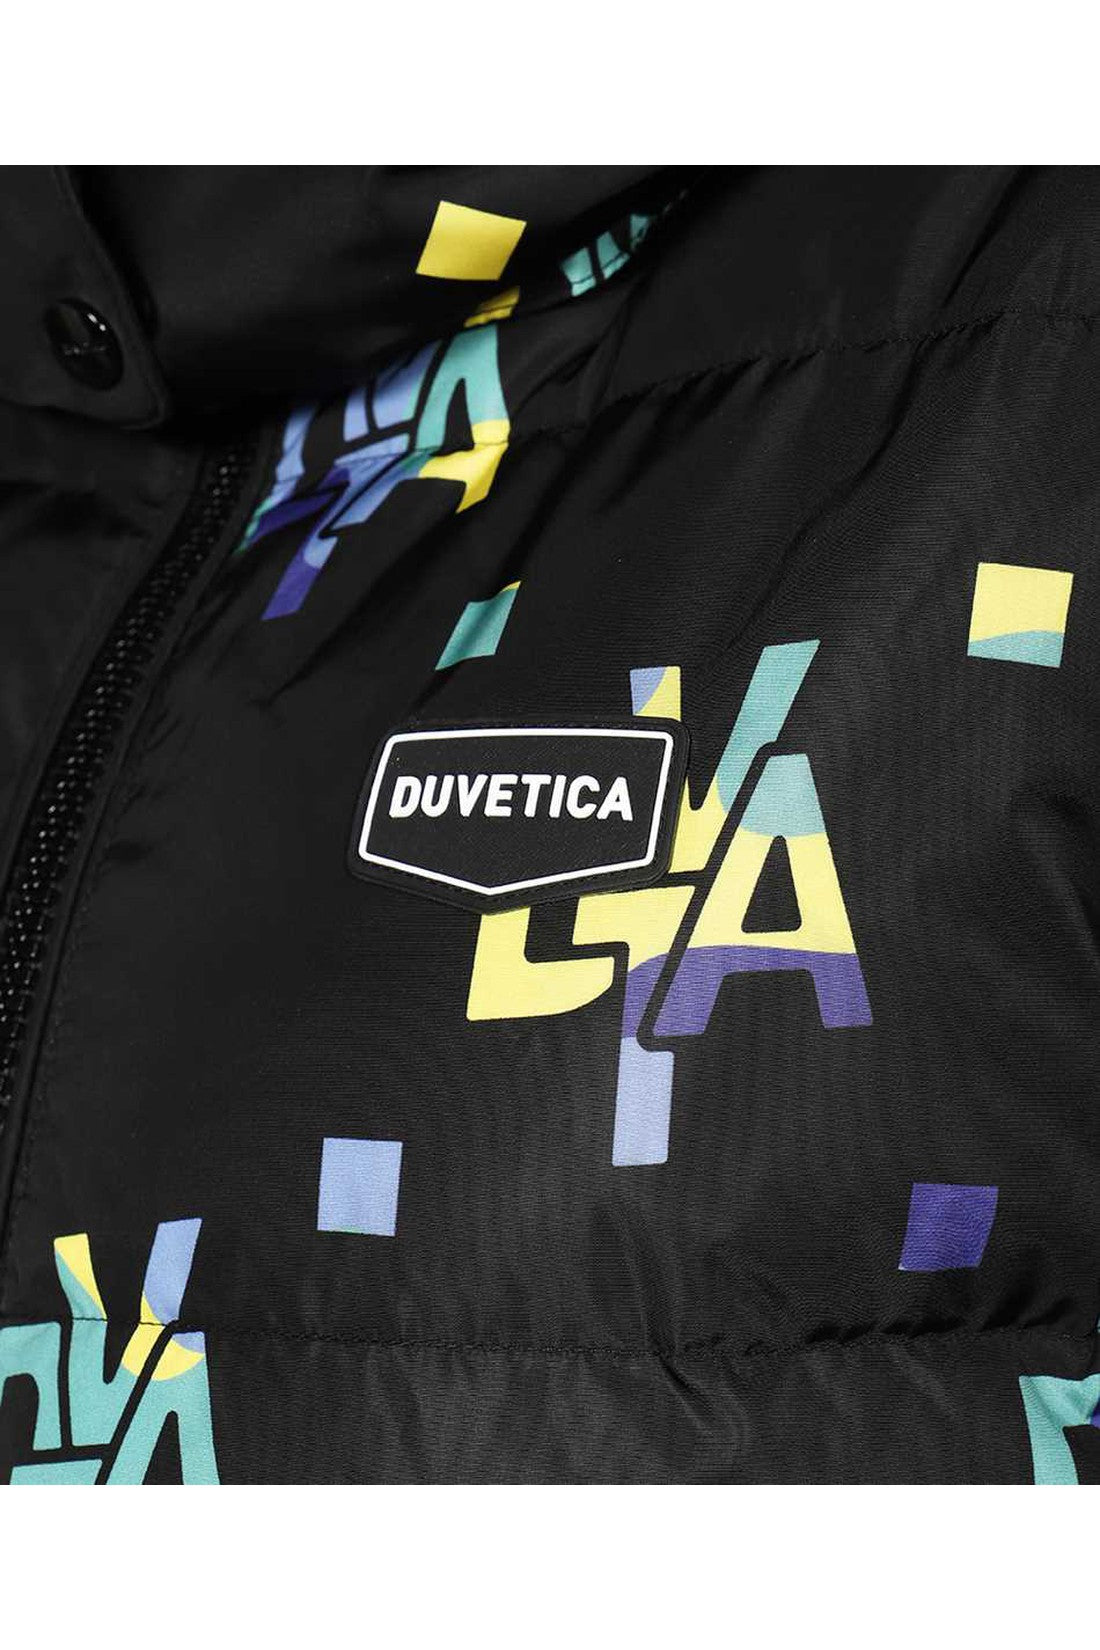 Duvetica-OUTLET-SALE-Short-down-jacket-Jacken-Mantel-ARCHIVE-COLLECTION-3_7ab3d799-8783-4e2c-a793-10222fd212f0.jpg